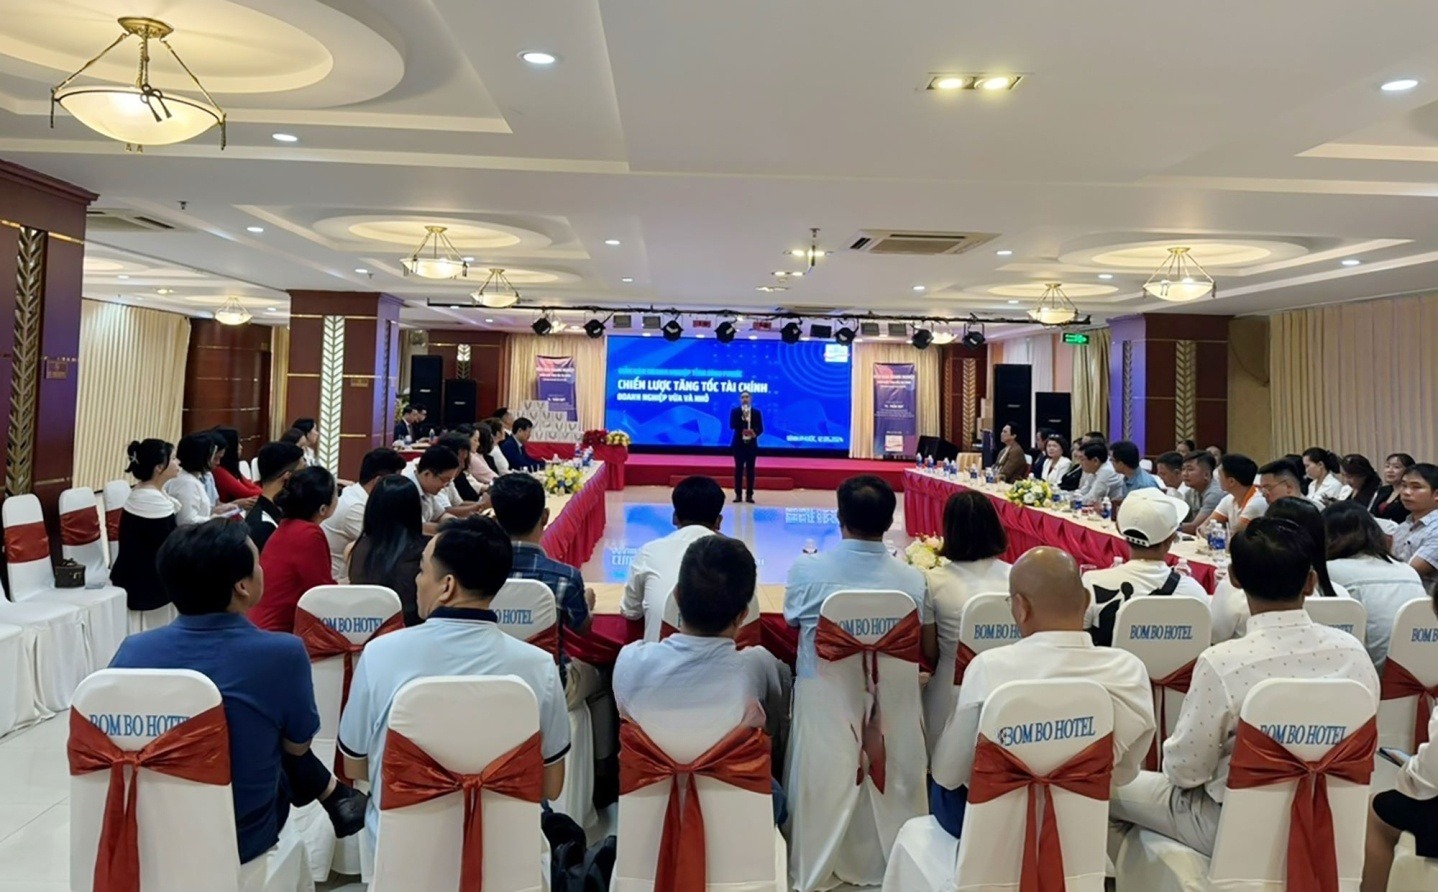 Chương trình có sự tham dự của hơn 60 doanh nghiệp vừa và nhỏ tại tỉnh Bình Phước